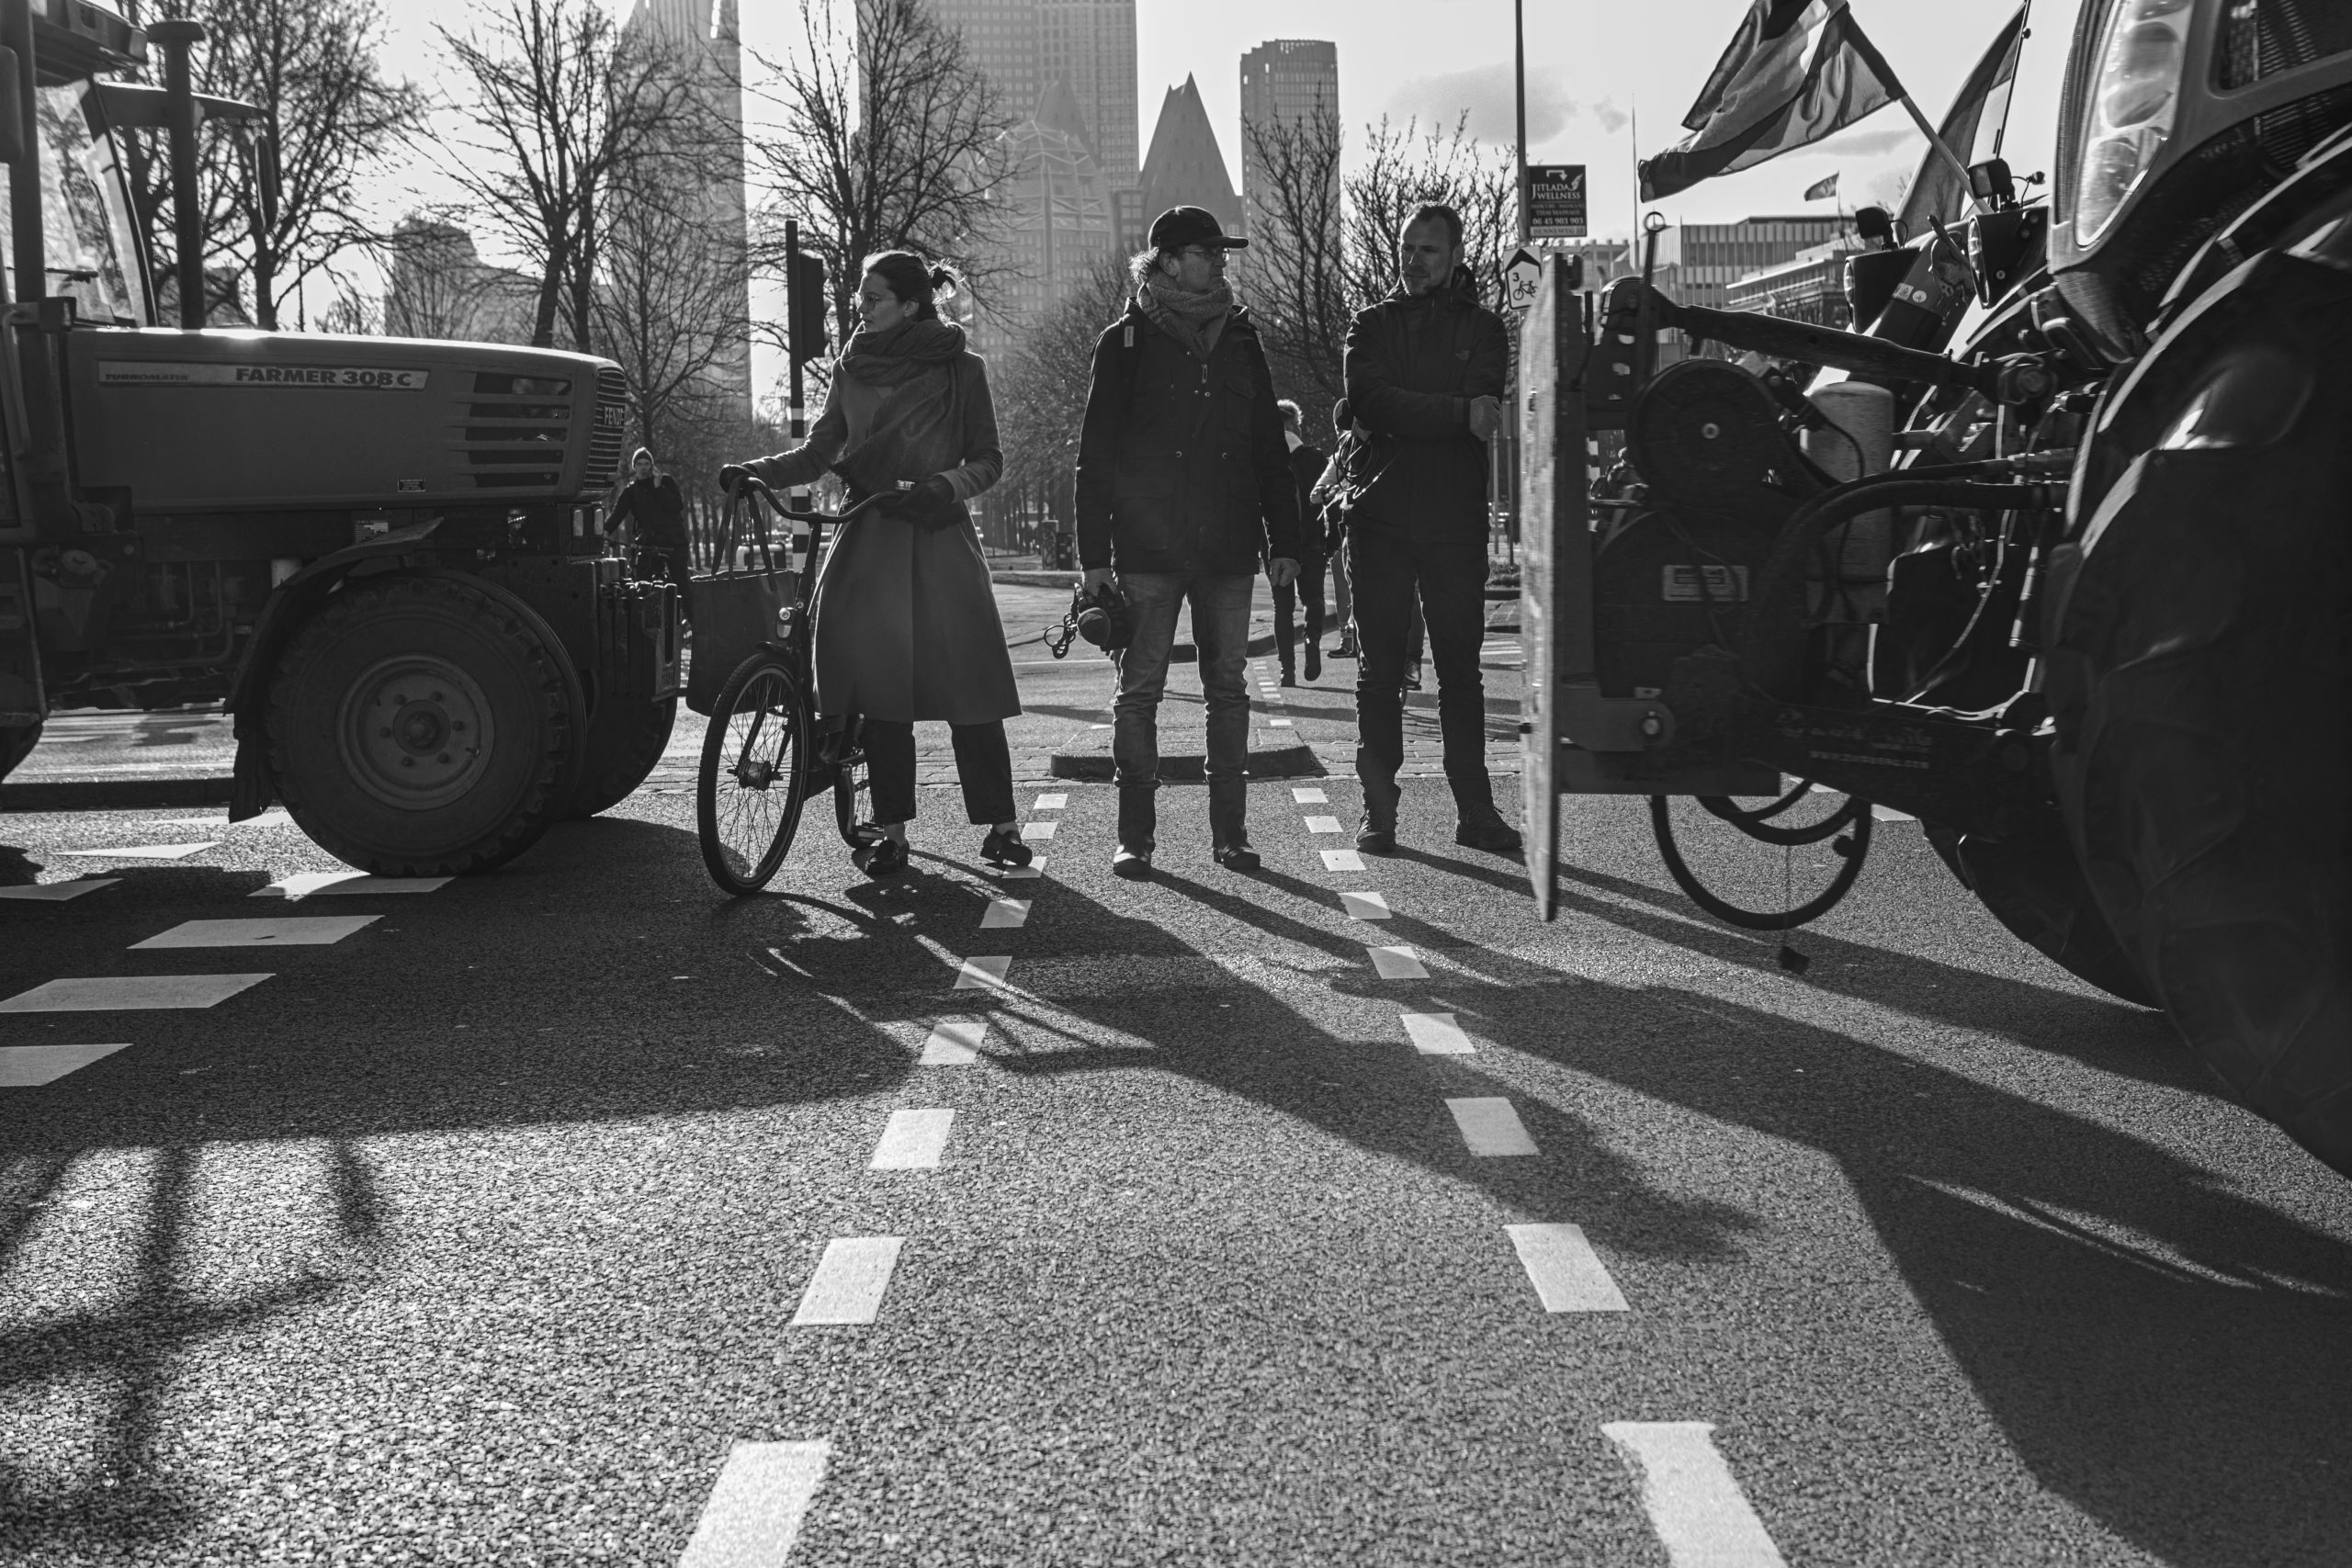 Boeren protest den Haag